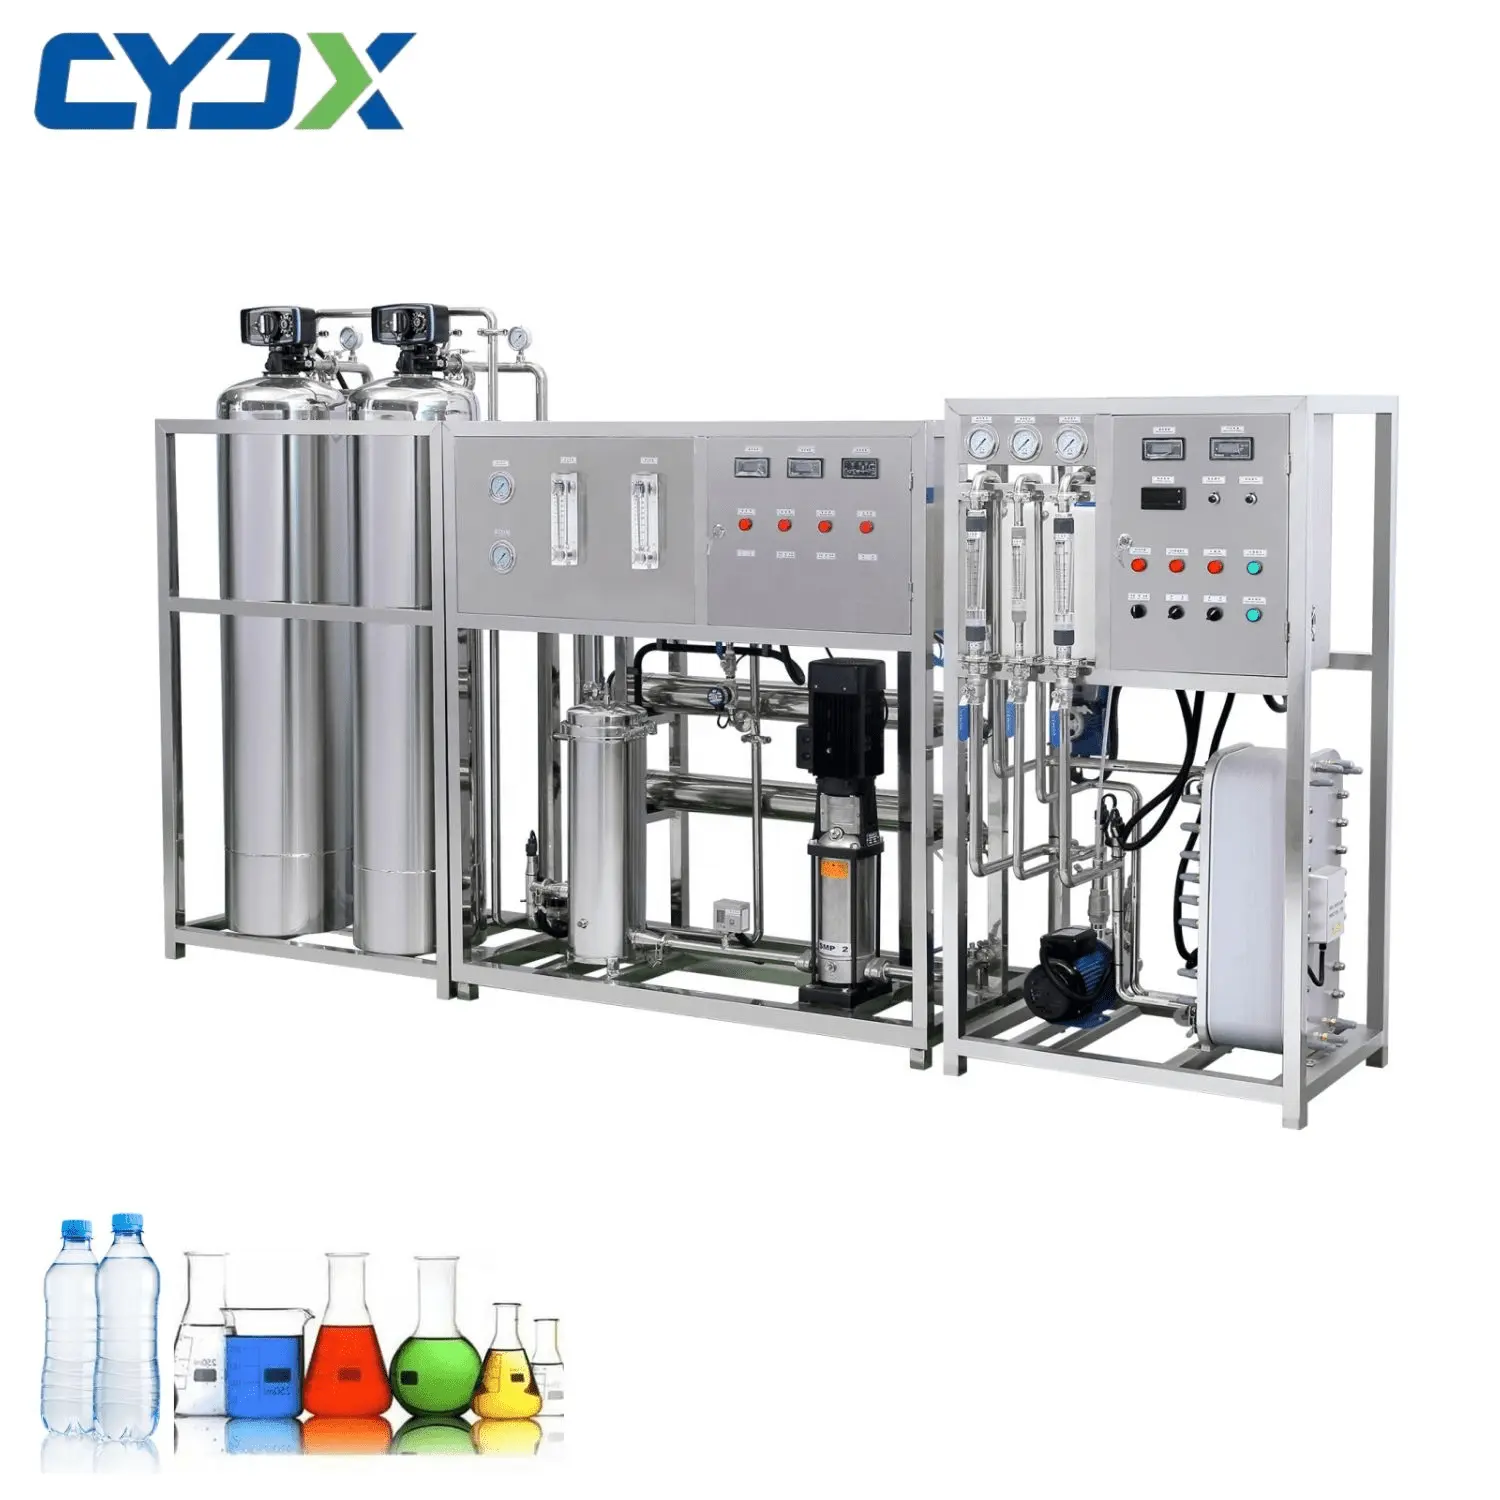 CYJX хорошая цена, 5000 LPH промышленная автоматическая система обратного осмоса, небольшая установка для очистки питьевой воды в бутылках для продажи